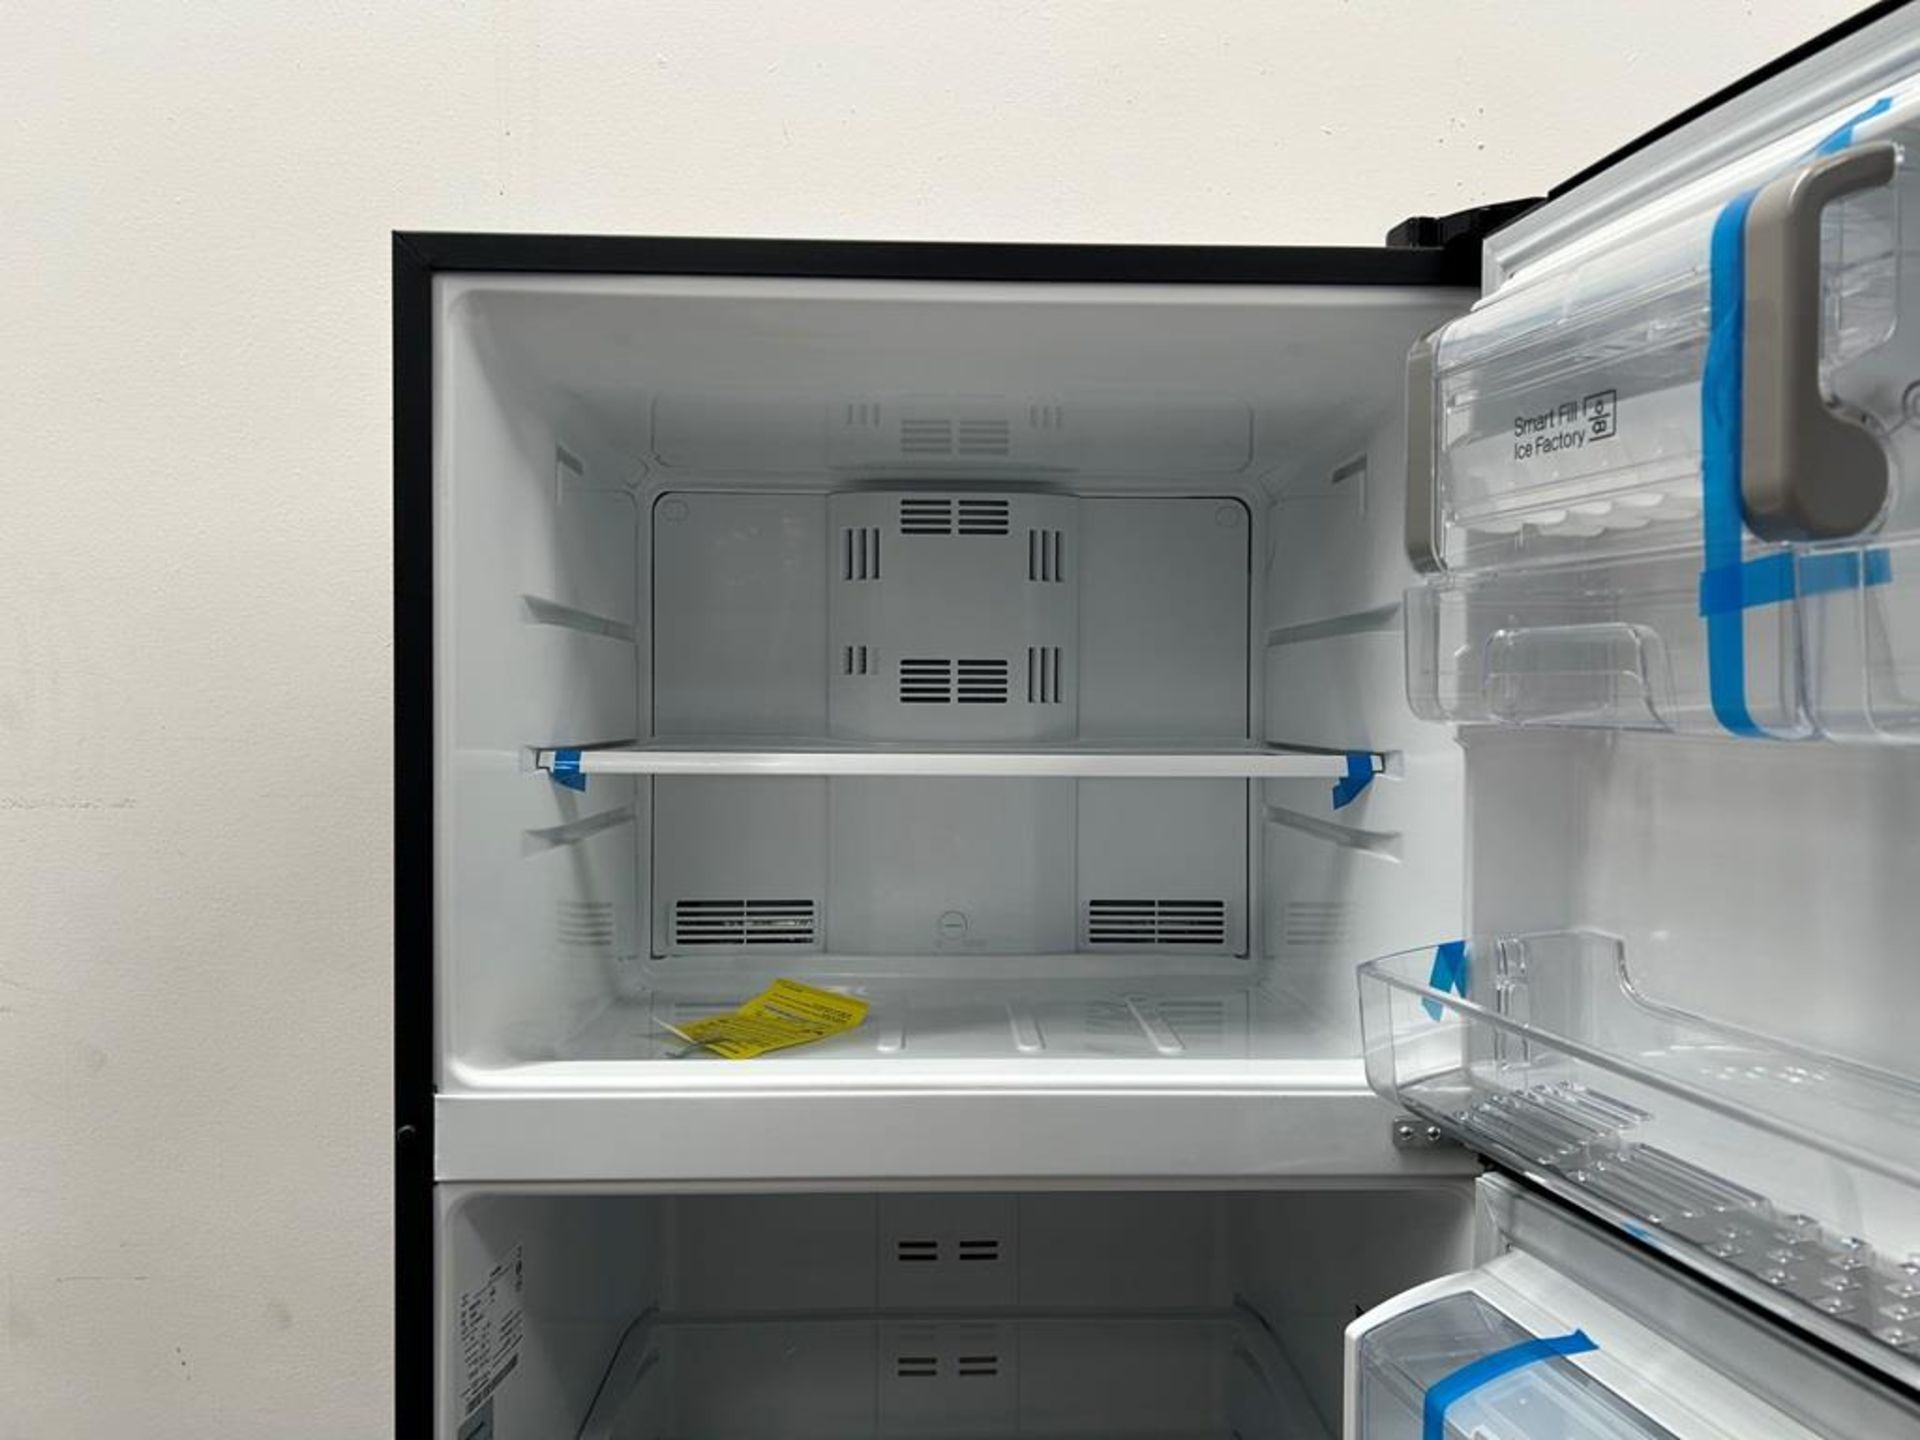 (NUEVO) Refrigerador con dispensador de agua Marca MABE, Modelo RMS510IBMRXA, Serie 04327, Color GR - Image 5 of 11